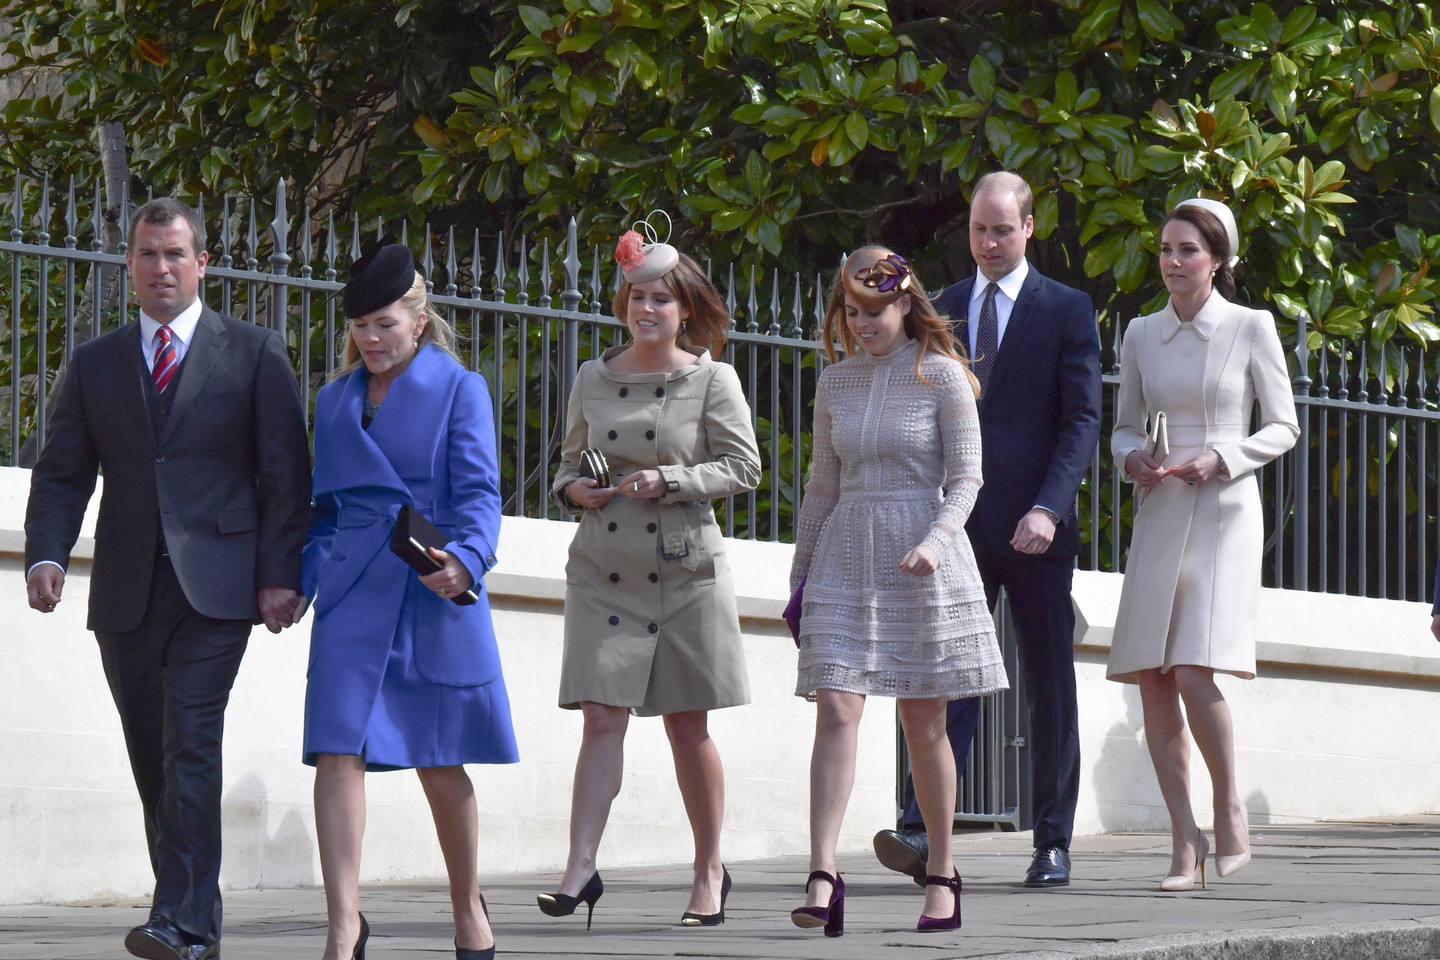 Elegantiškoji Catherine Middleton šventėje visas nustelbė savo grožiu.<br>ViDA Press nuotr.